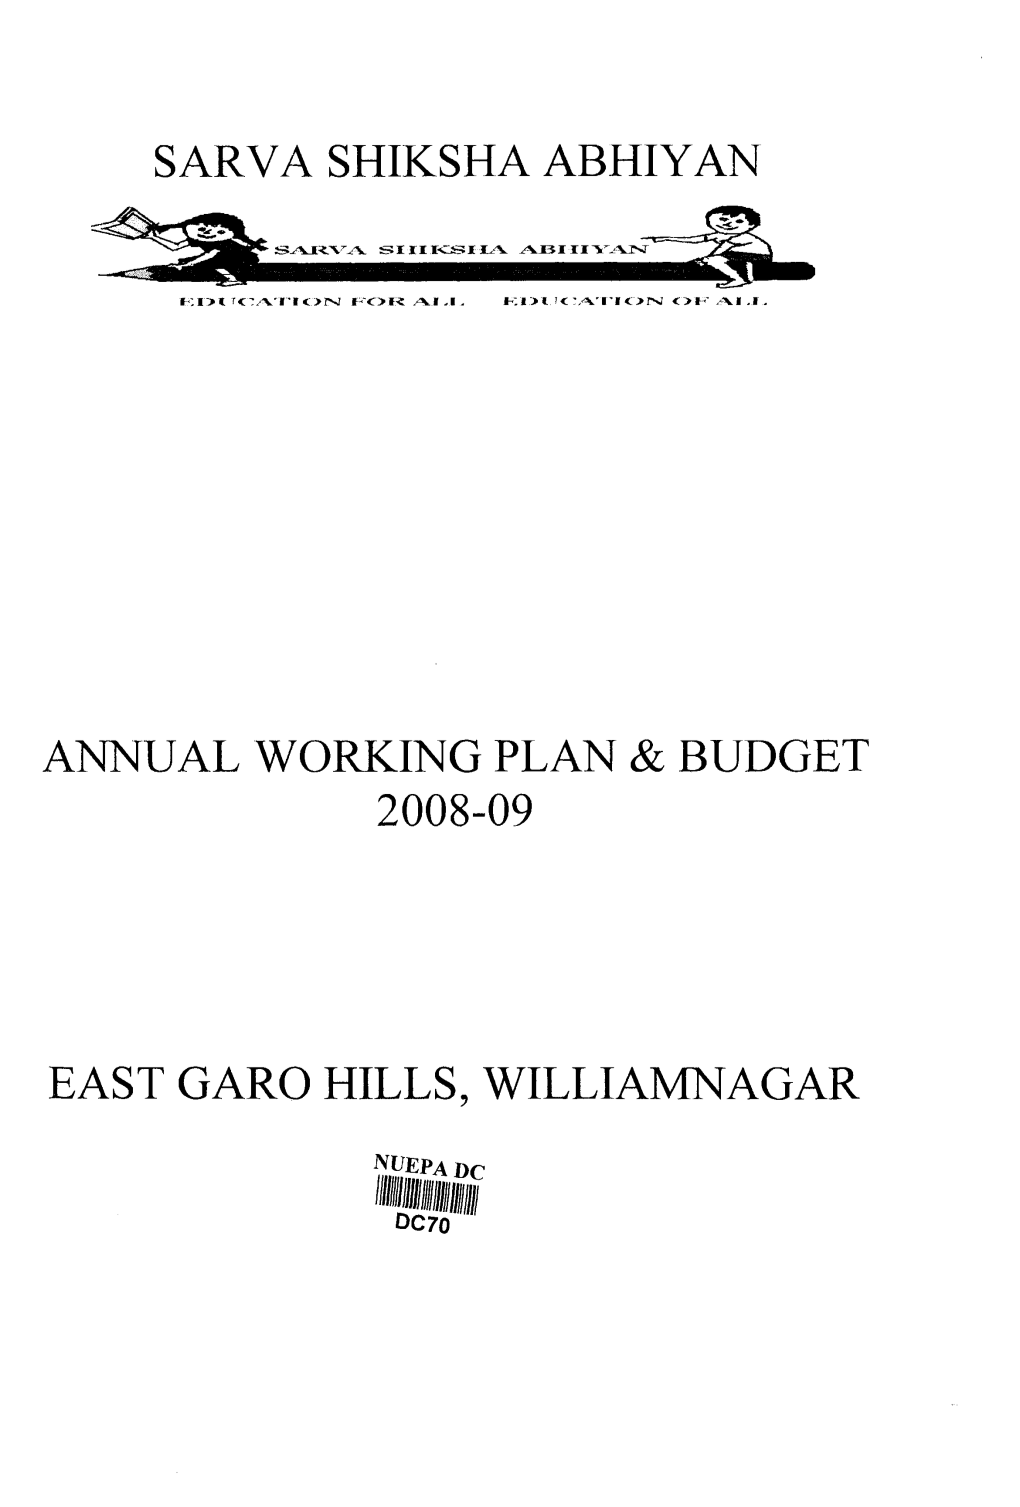 Annual Working Plan & Budget 2008-09 East Garo Hills, Williamnagar